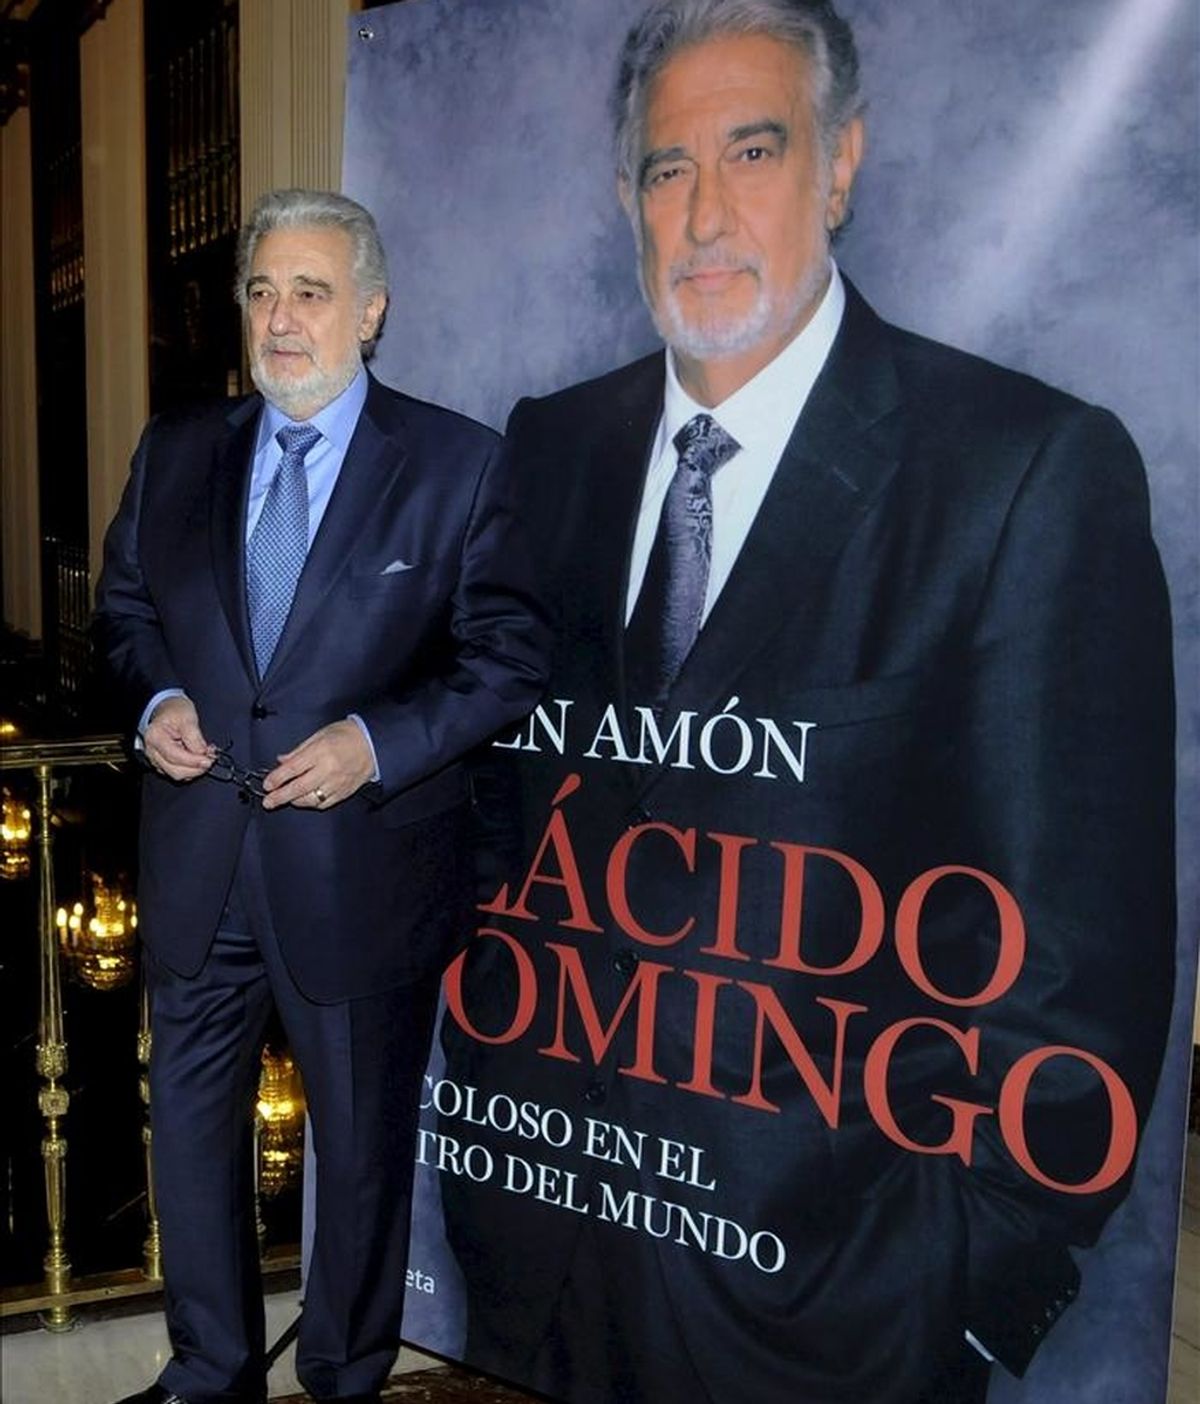 El tenor Plácido Domingo posó hoy durante el acto de presentación de su biografía, escrita por el periodista Rubén Amón, que tuvo lugar en el Teatro de la Zarzuela de Madrid. EFE